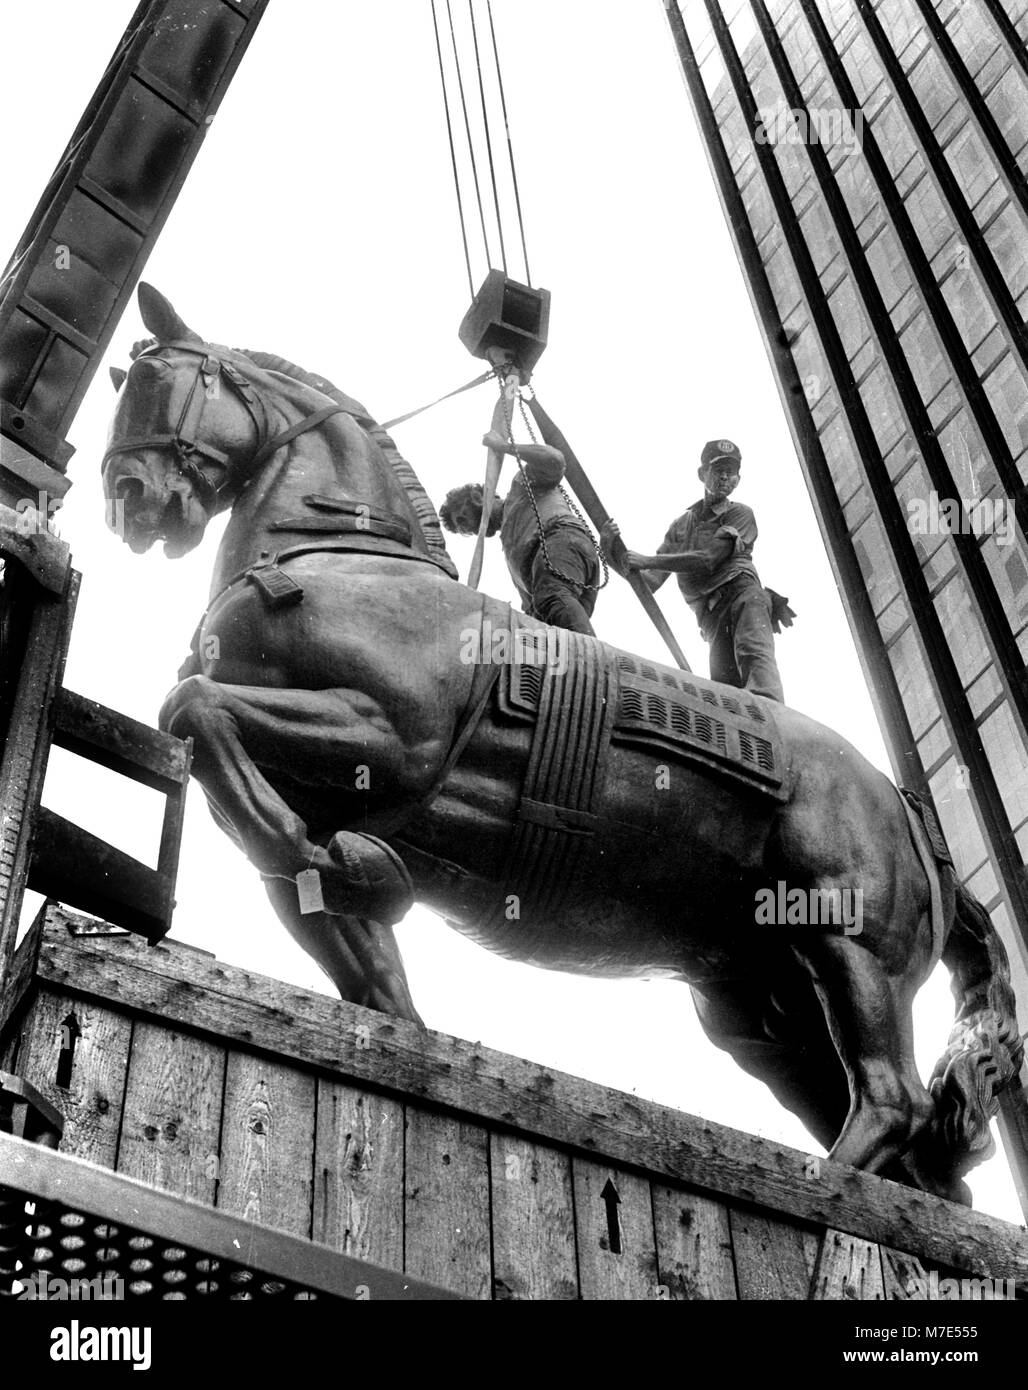 Trammell Crow's cheval en bronze livré à Dallas Tx USA, le Monument à Alvear cheval par Antoine Bourdelle (31 octobre 1861 - 1 octobre 1929), un sculpteur français influents photo de Bill belknap 1985 Banque D'Images